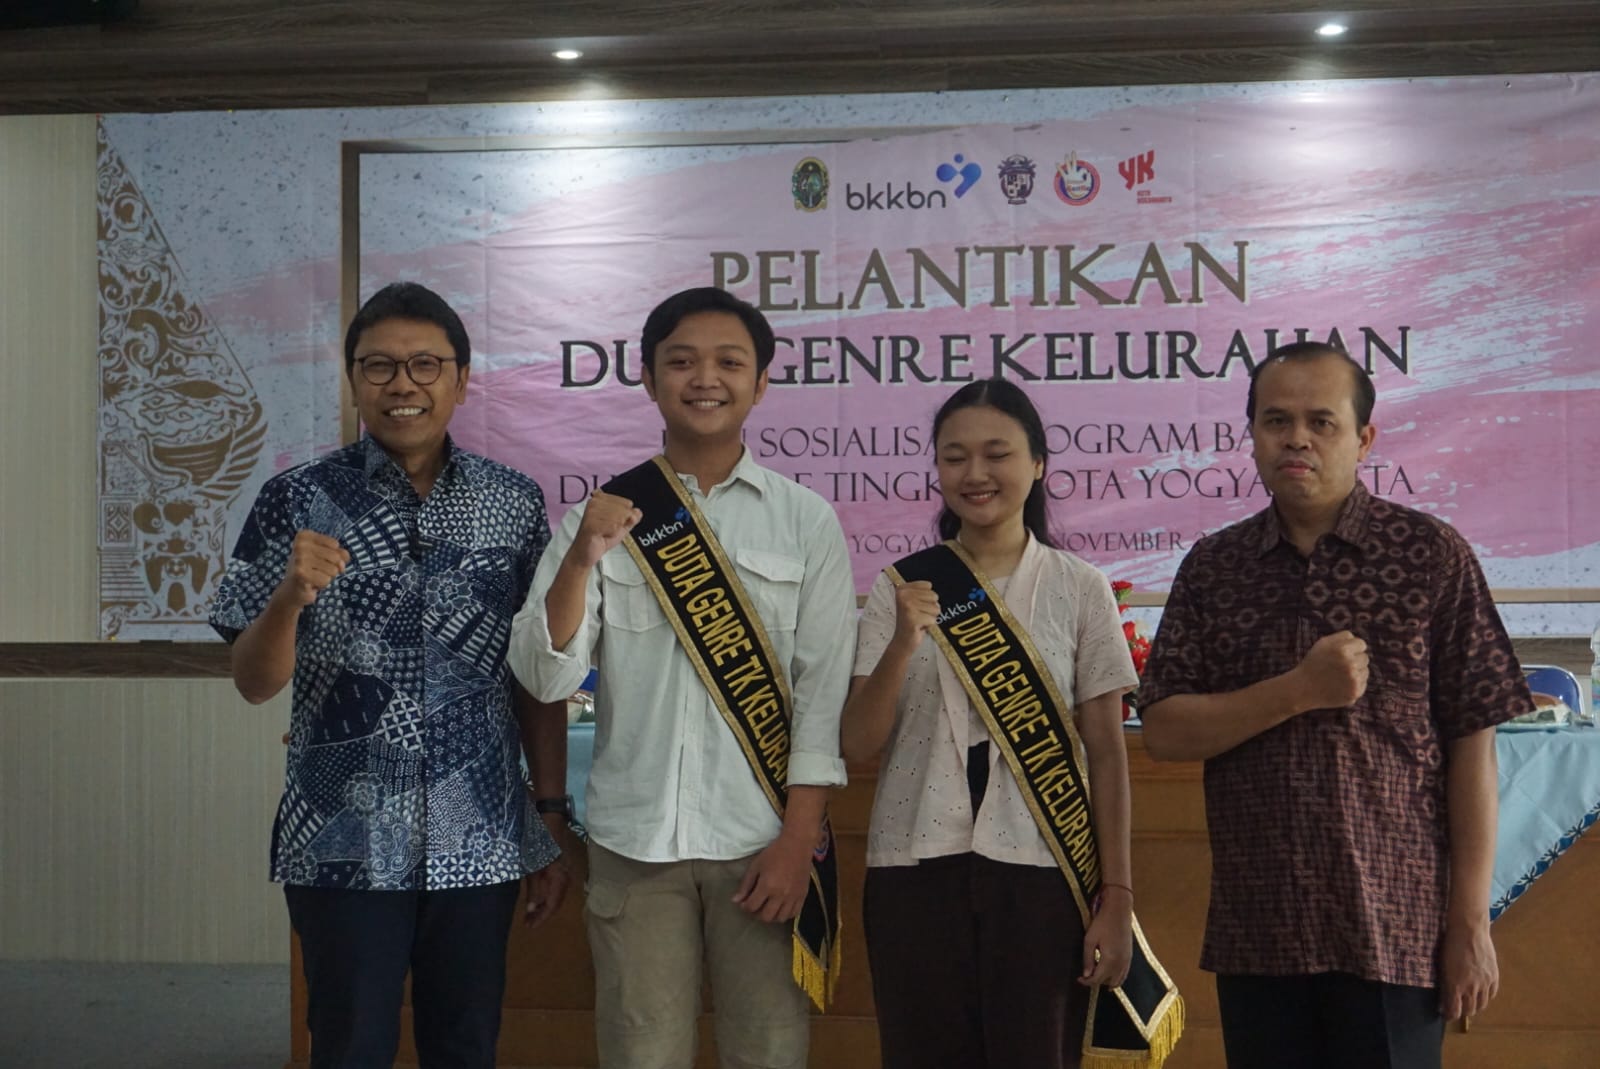 Pelantikan dan Sosialisasi Program kepada Duta GenRe Kelurahan Kota Yogyakarta